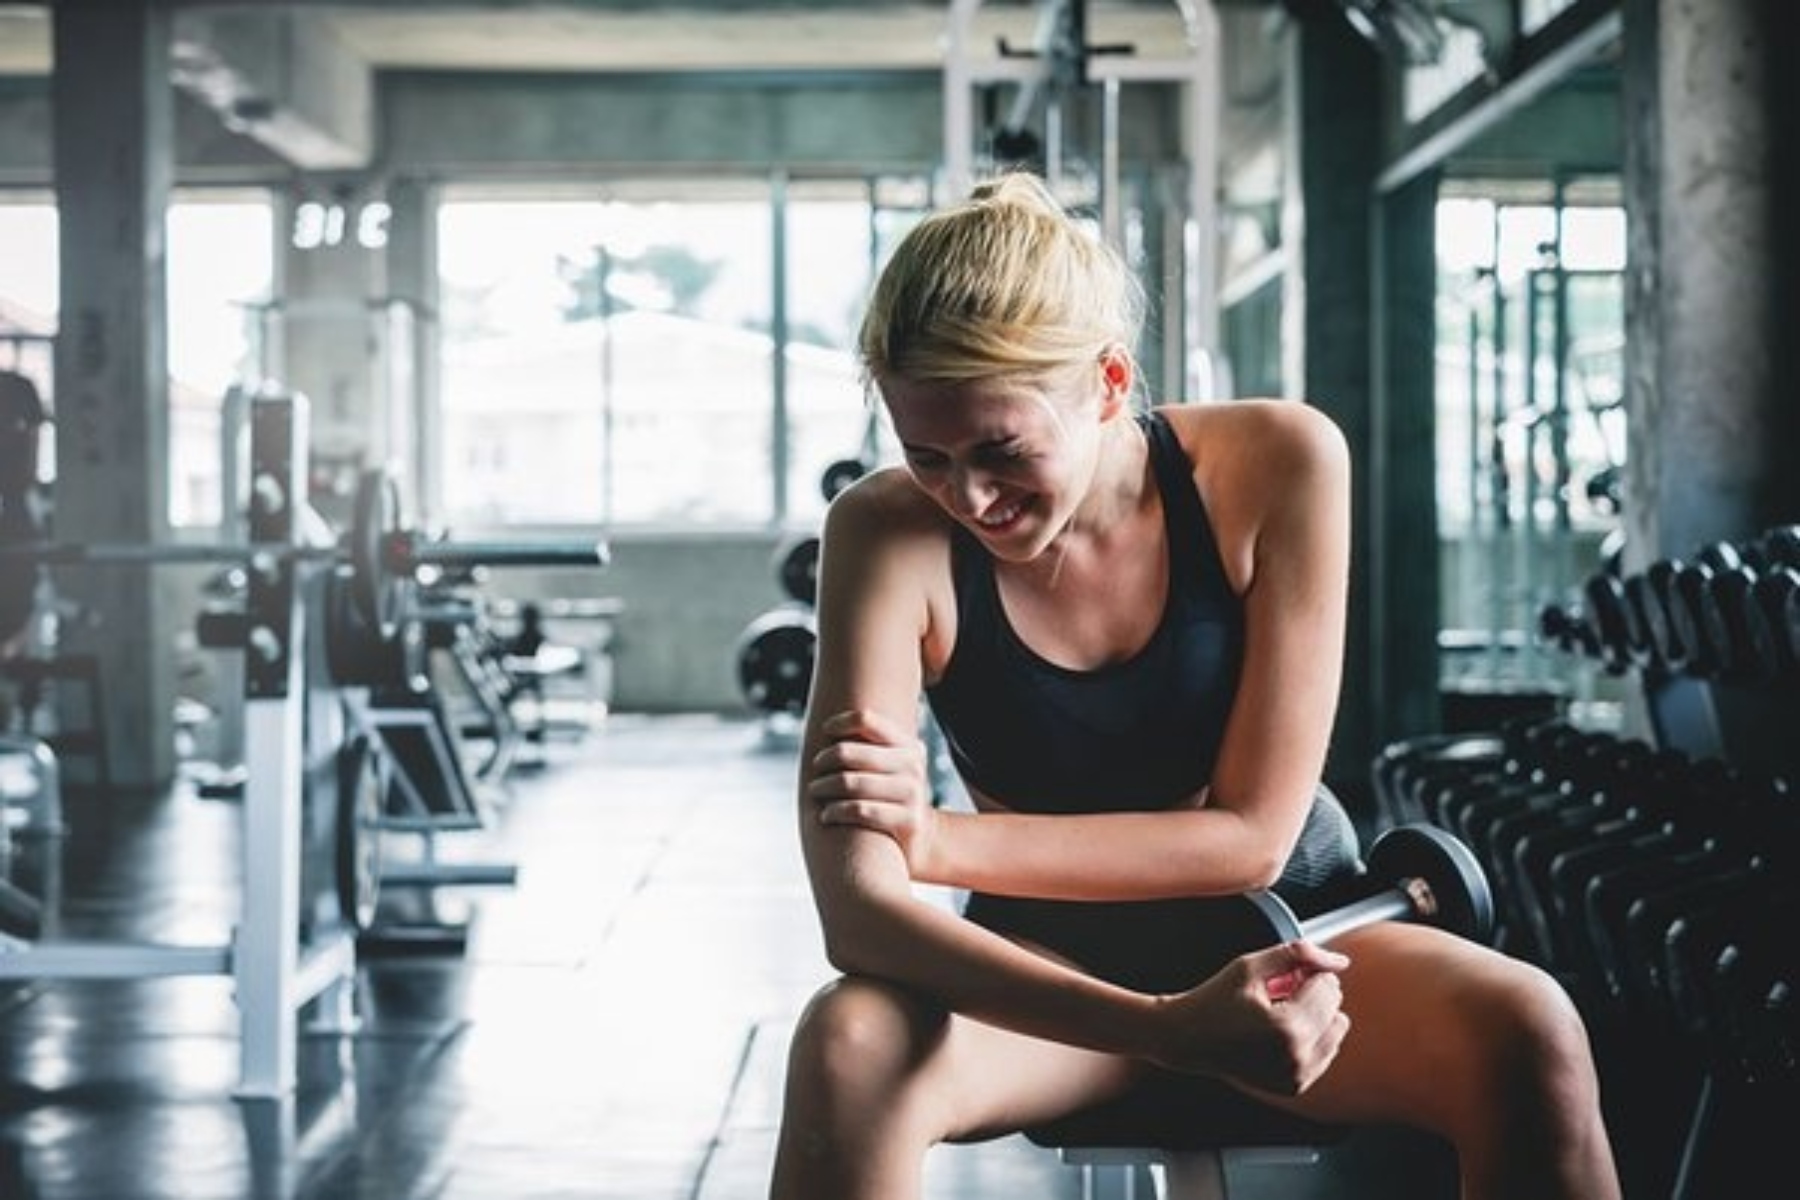 Άσκηση πόνος: Είναι οι πονεμένοι μύες αναπόφευκτοι μετά από μια σκληρή προπόνηση;